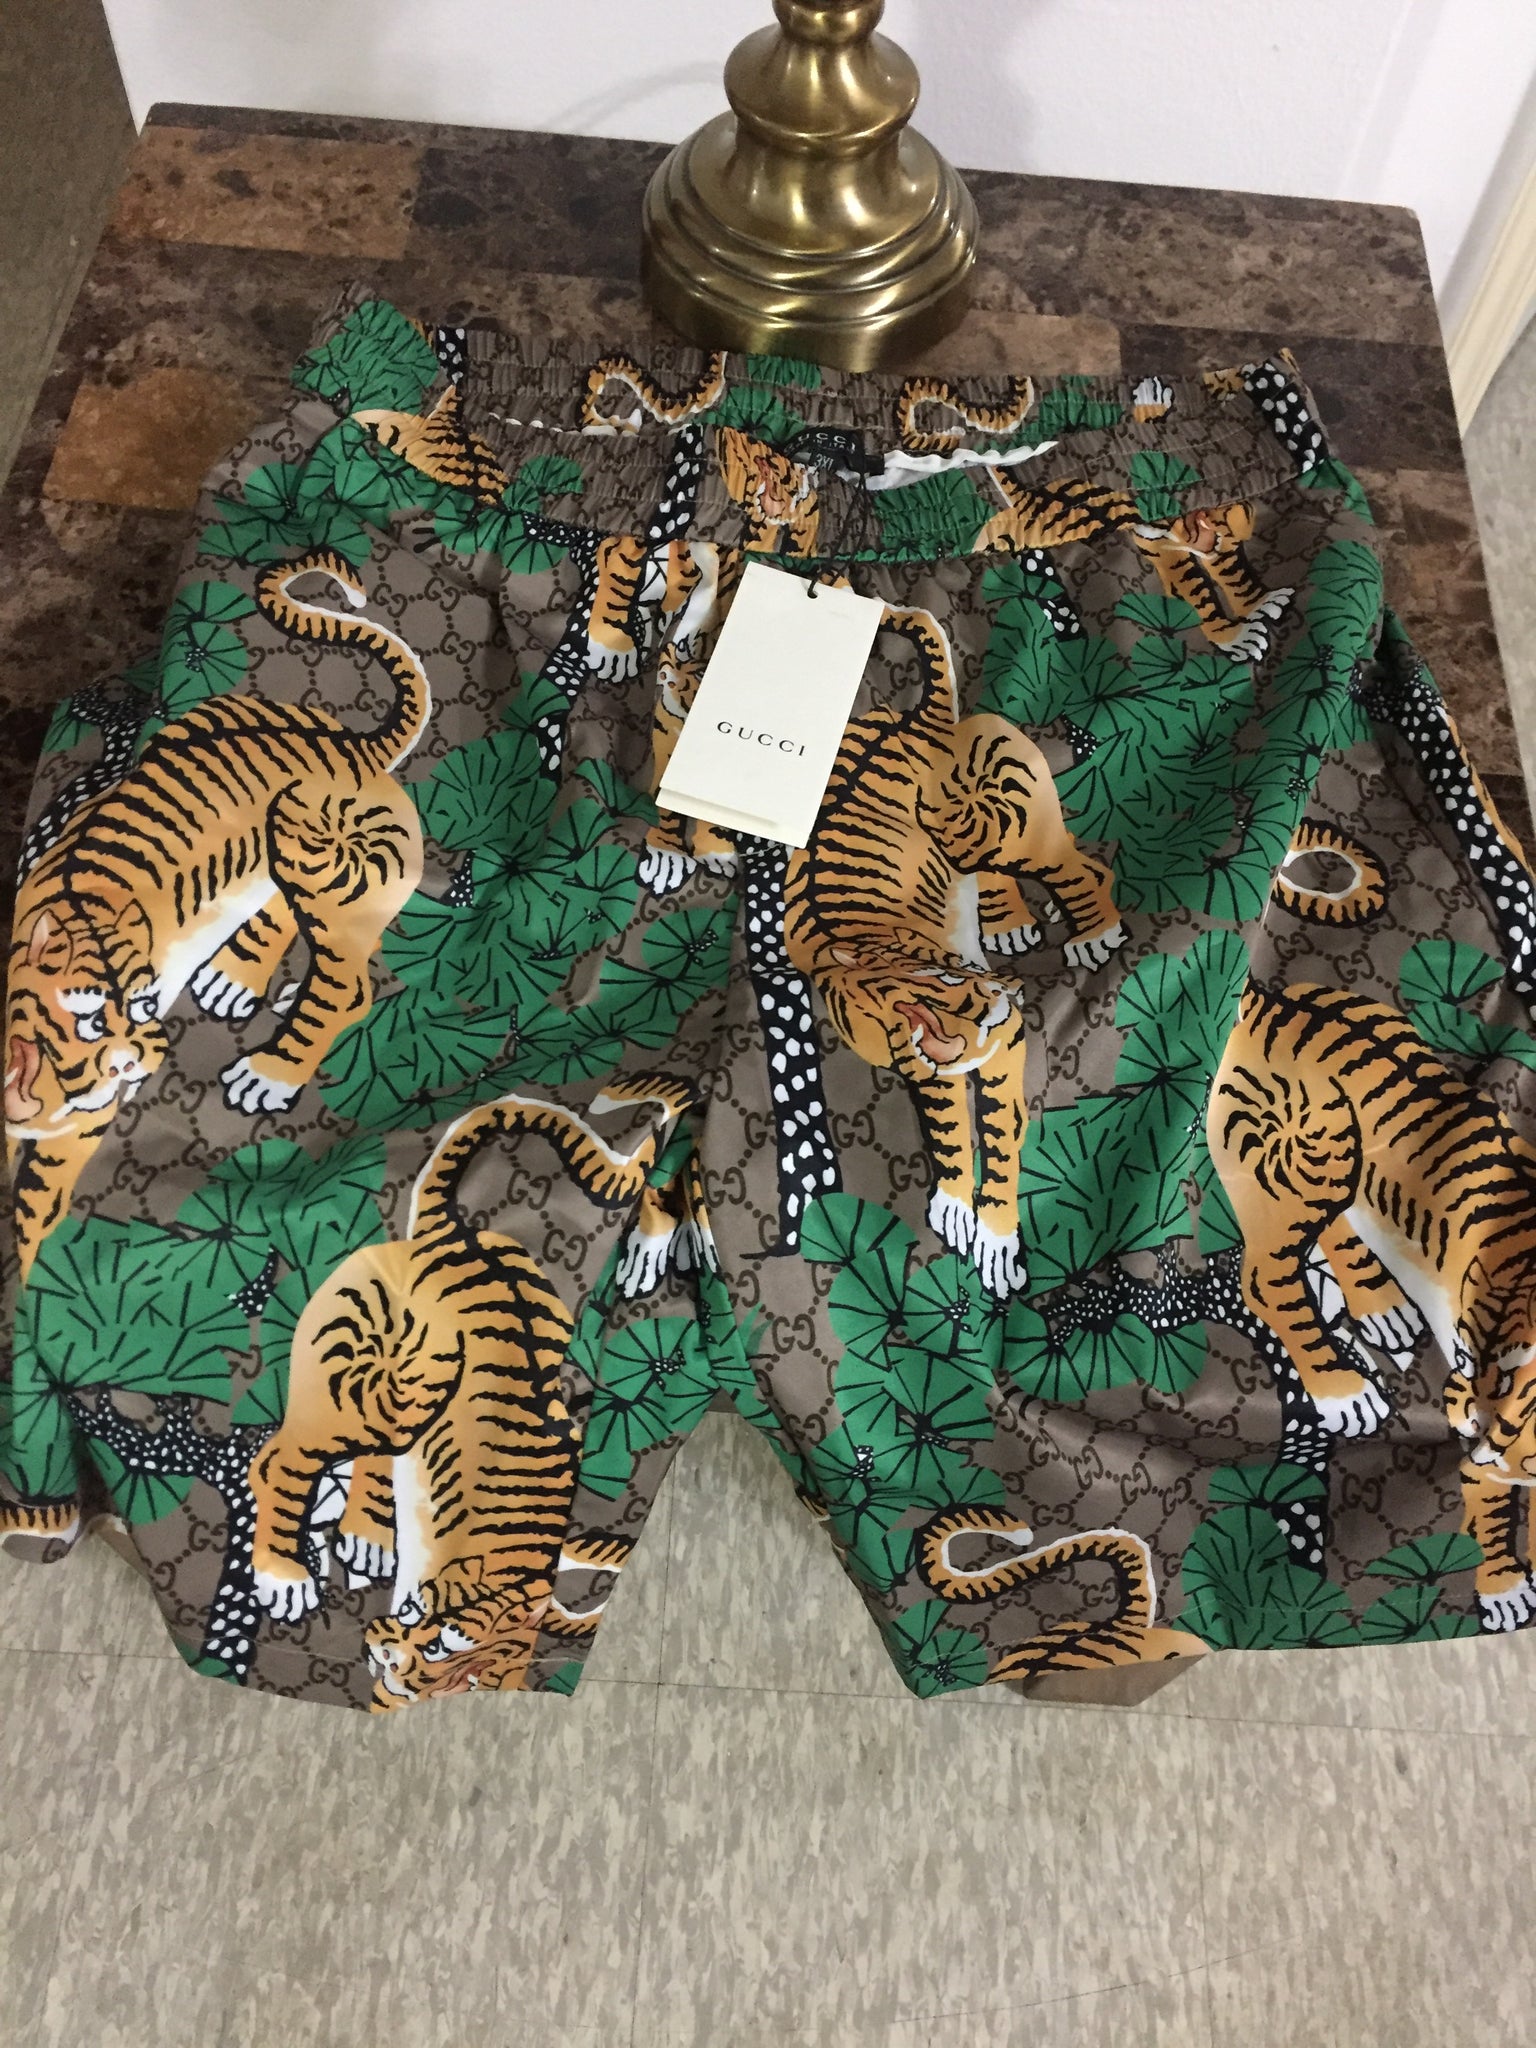 gucci bengal tiger shorts